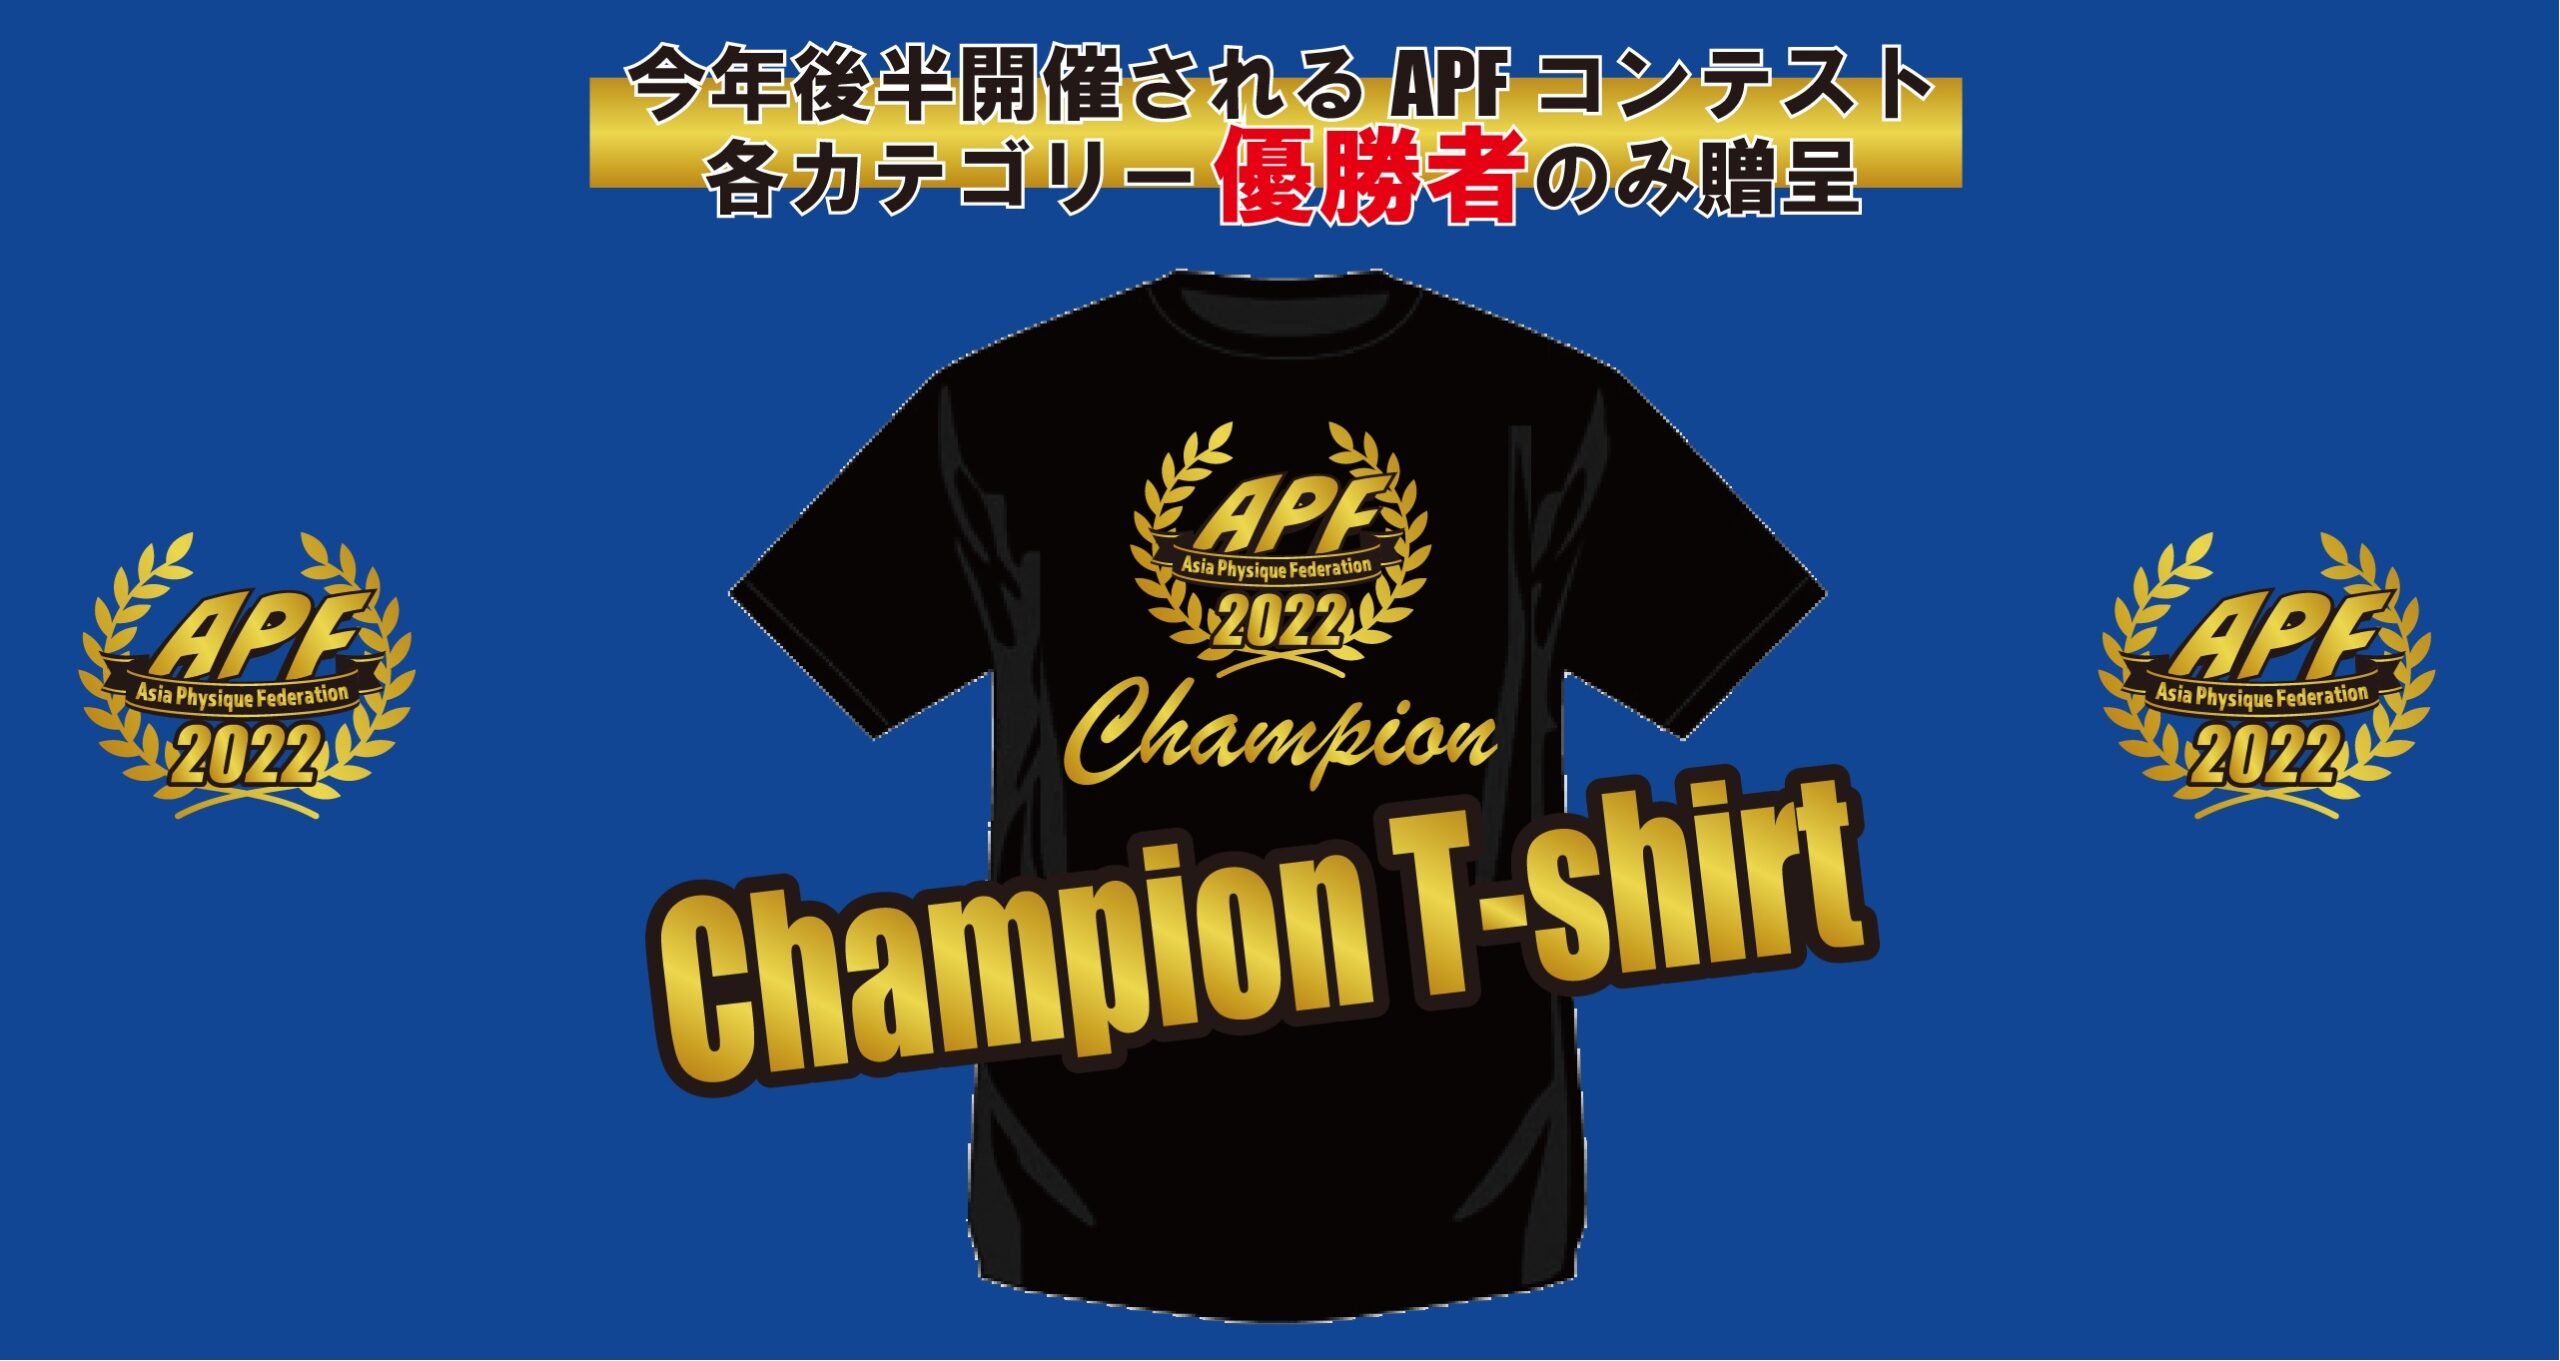 2022/後期 APF Champion T-shirt のお知らせ及び掲載スポンサー募集※期限6月27日まで